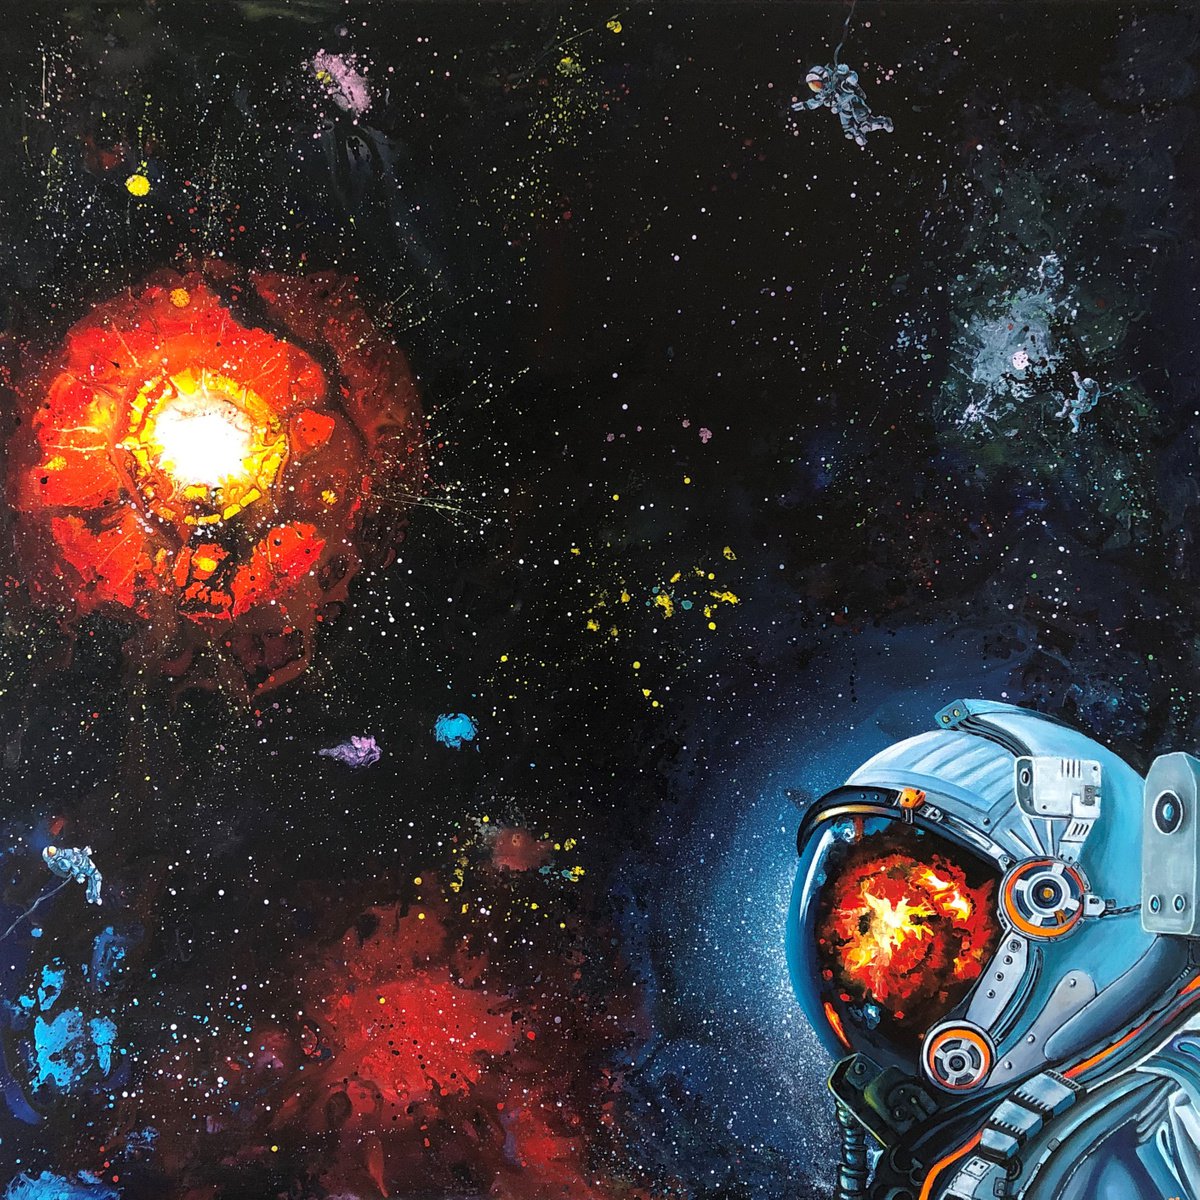 Cosmos #13 by Lena Smirnova